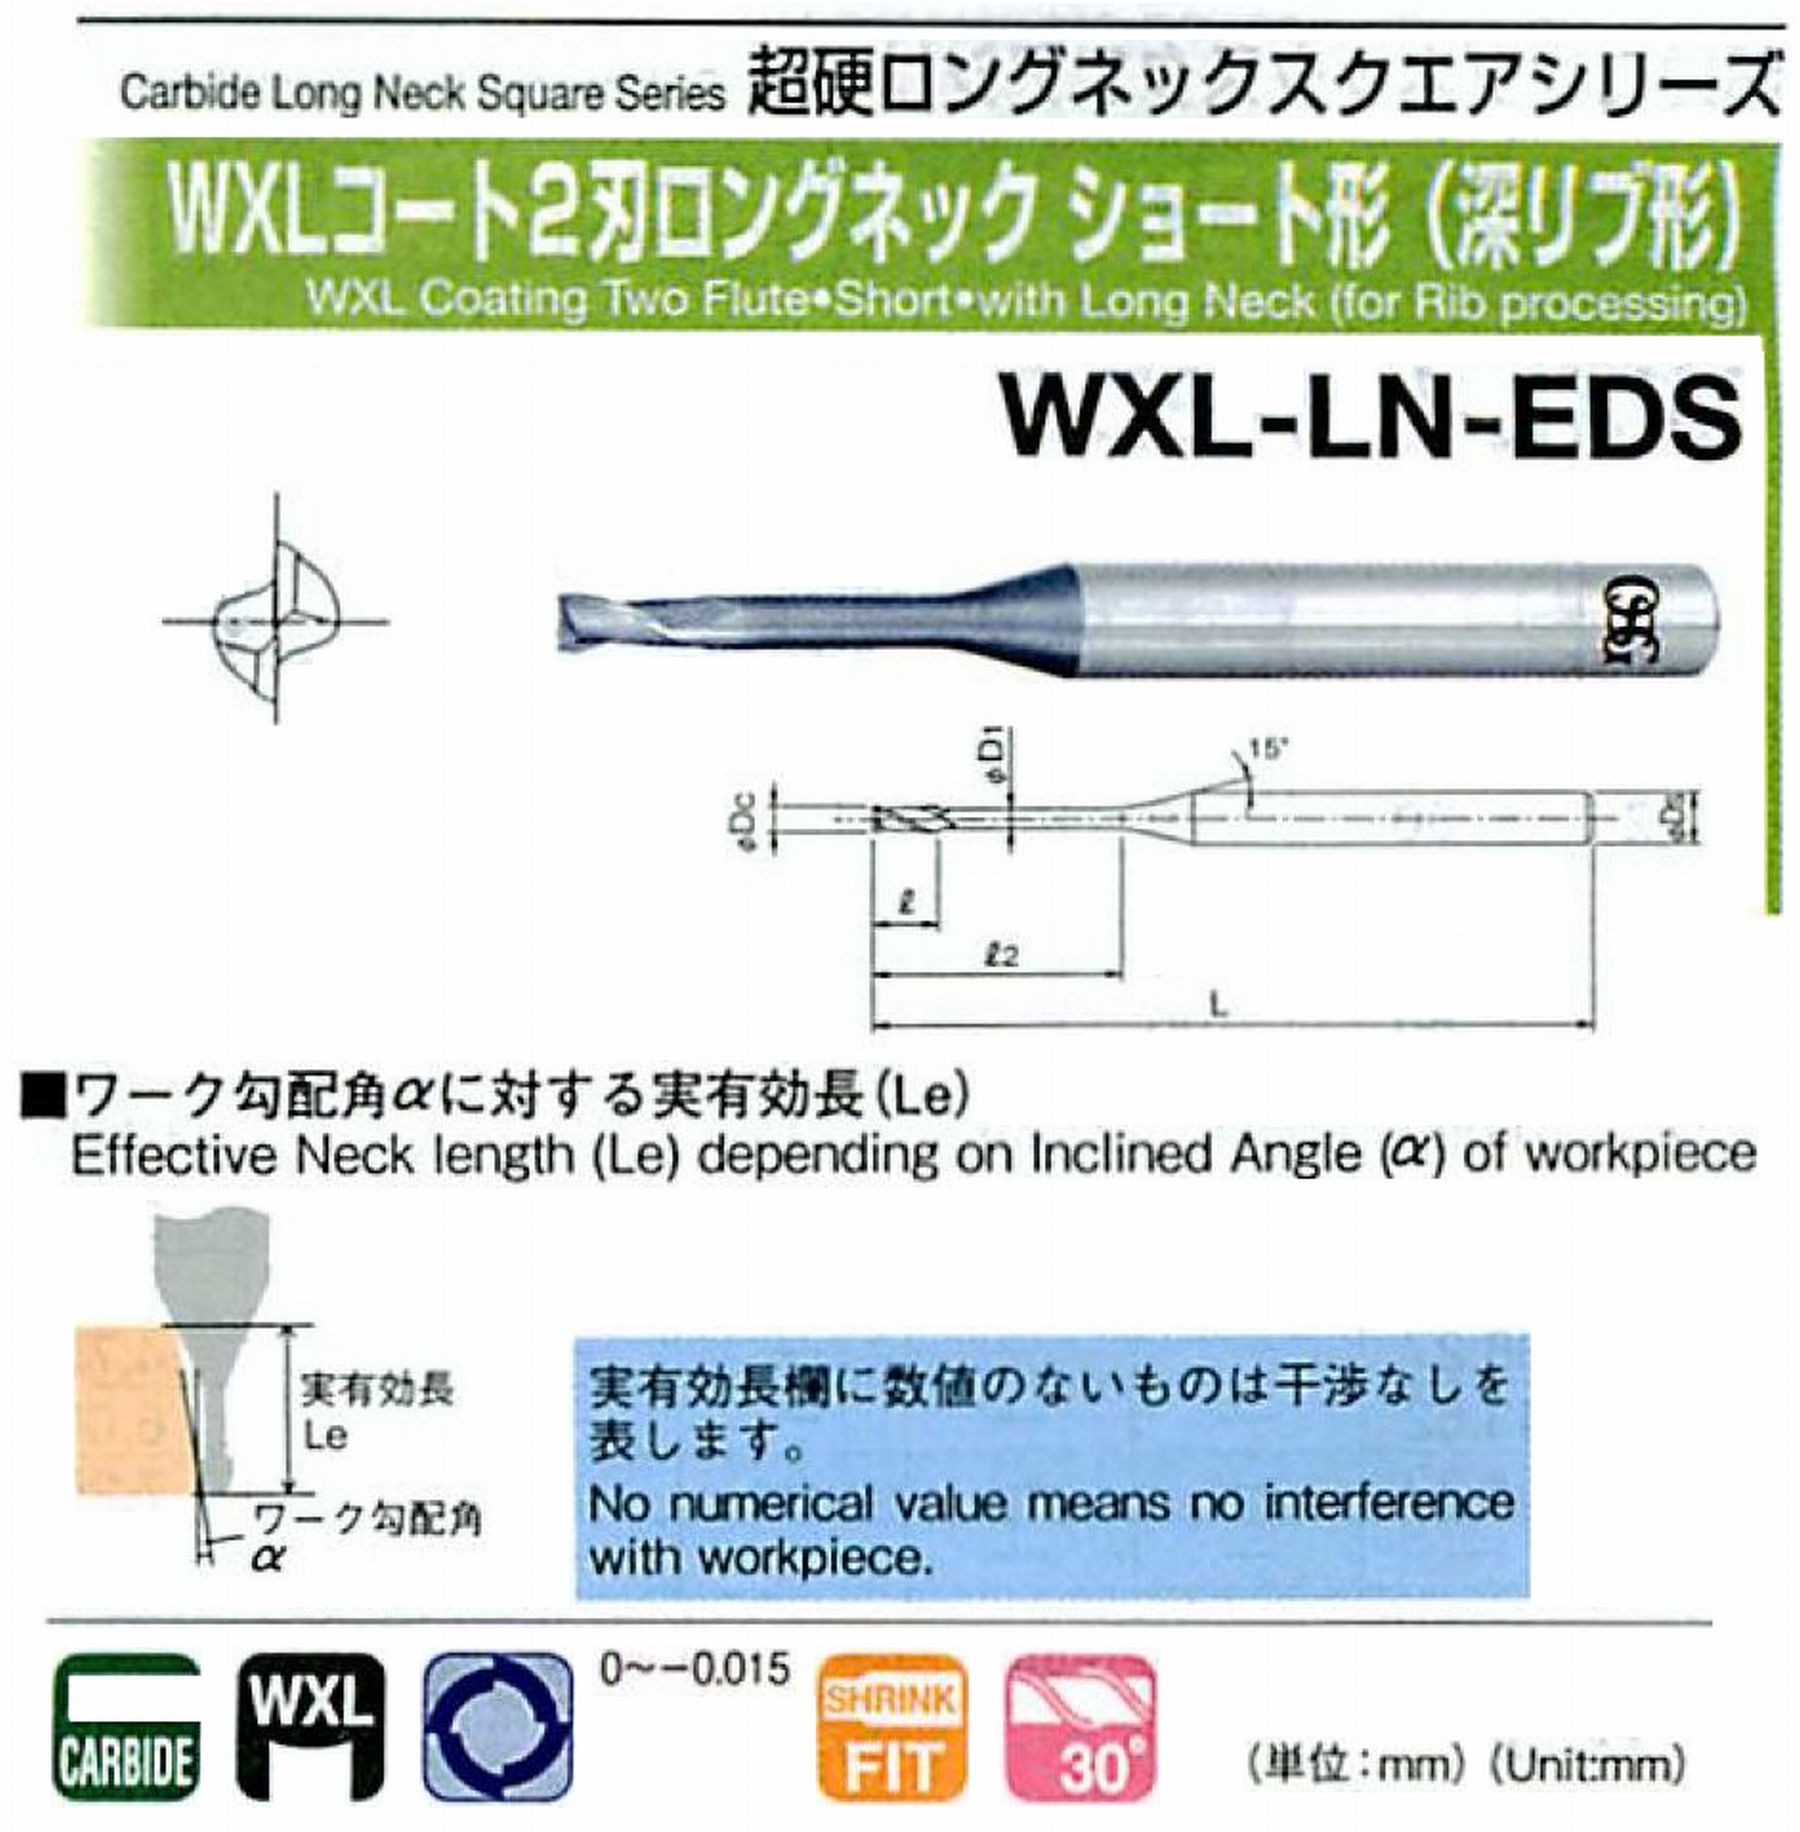 オーエスジー/OSG WXLコート2刃 ロングネックショート形(深リブ形) WXL-LN-EDS 外径×首下長0.3×2 全長45 刃長0.45 シャンク径4mm 首径0.28